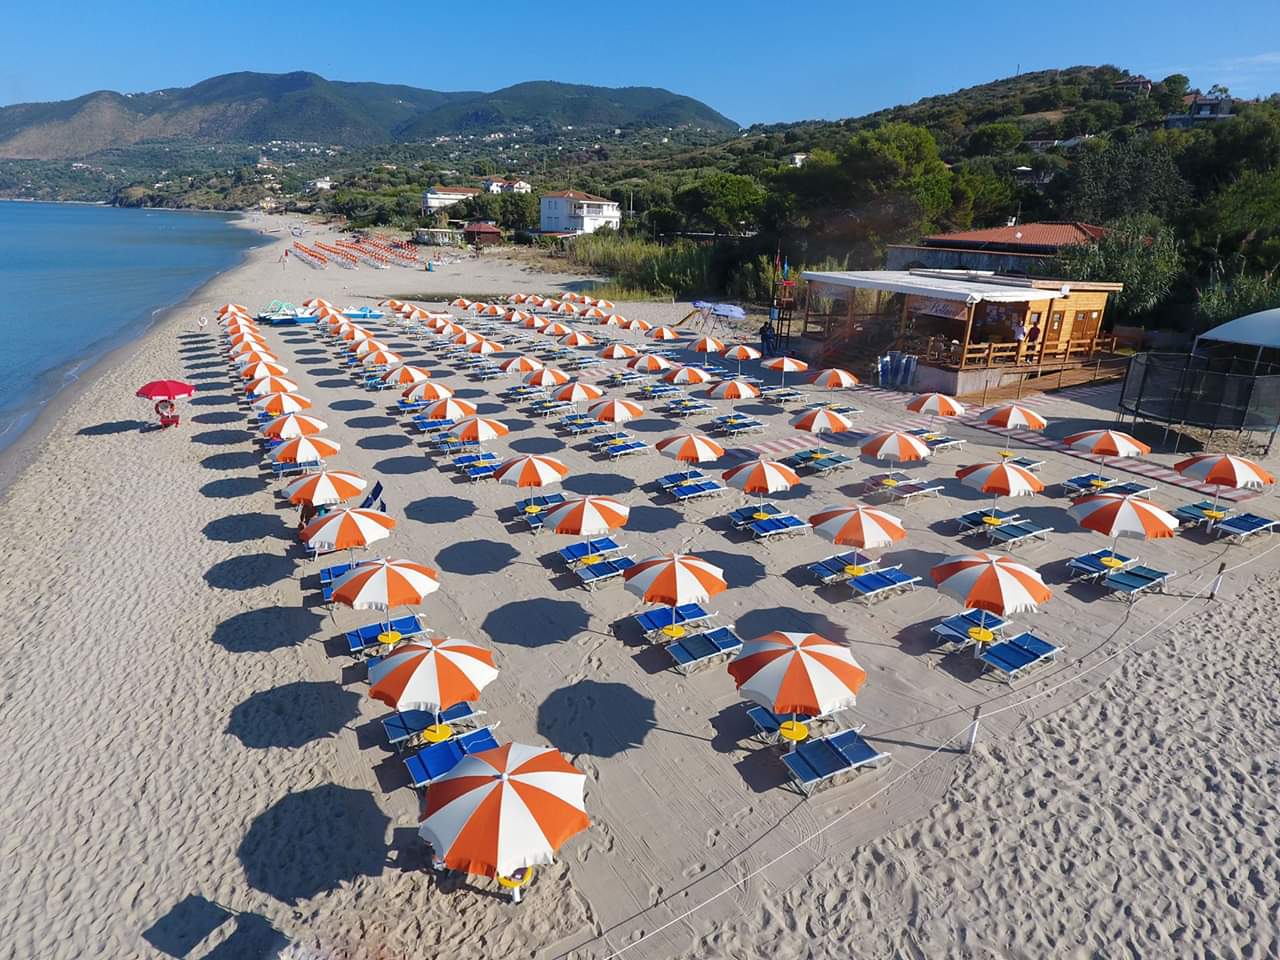 Foto av Spiaggia Le Saline med lång rak strand